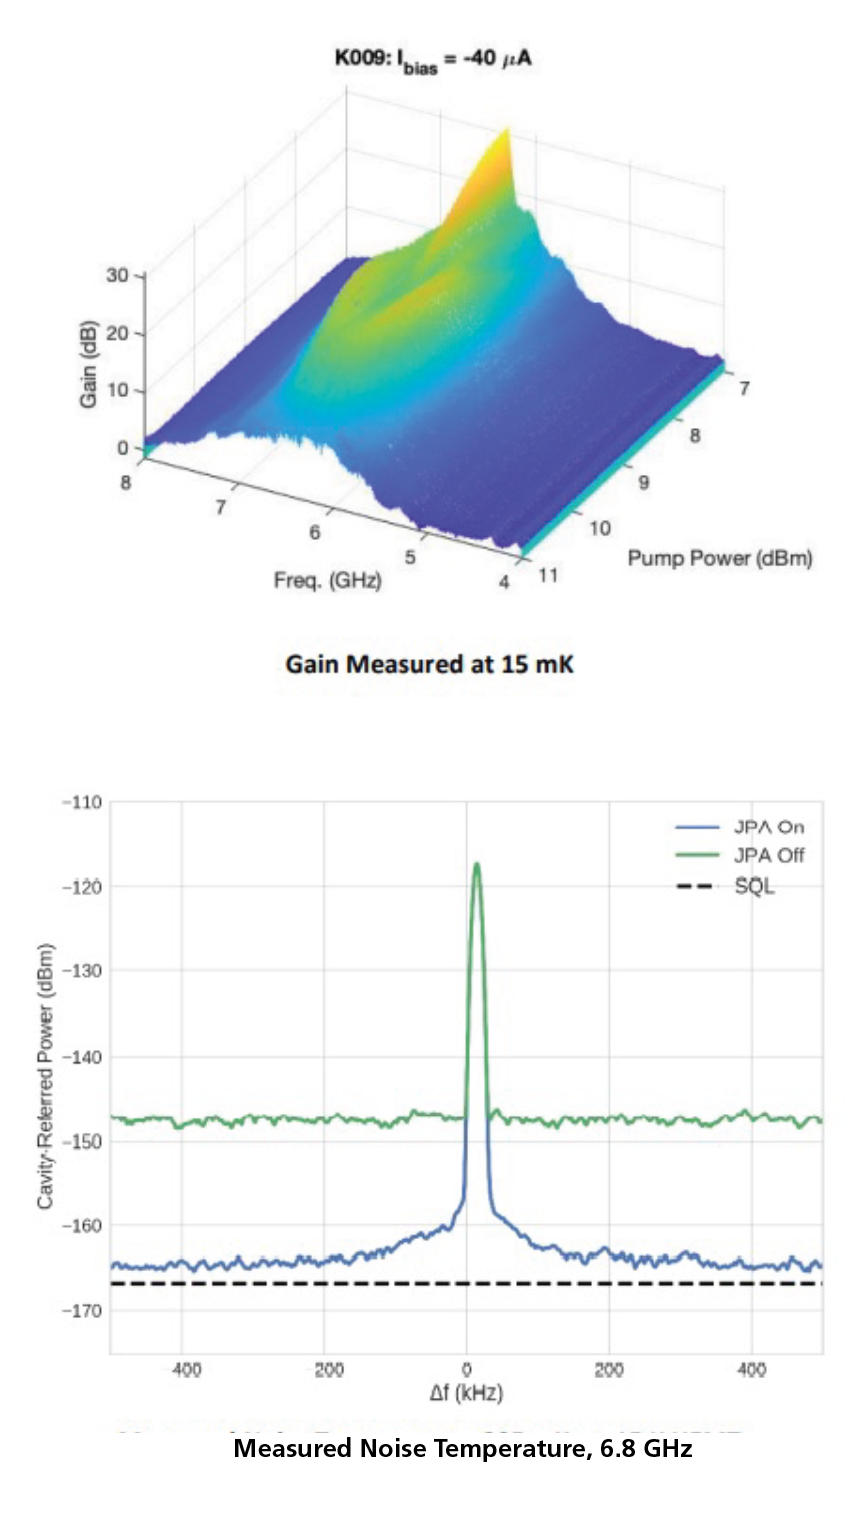 JPA Gain Measured at 15 mK ad Measured Noise Temperature for Quantum Computing